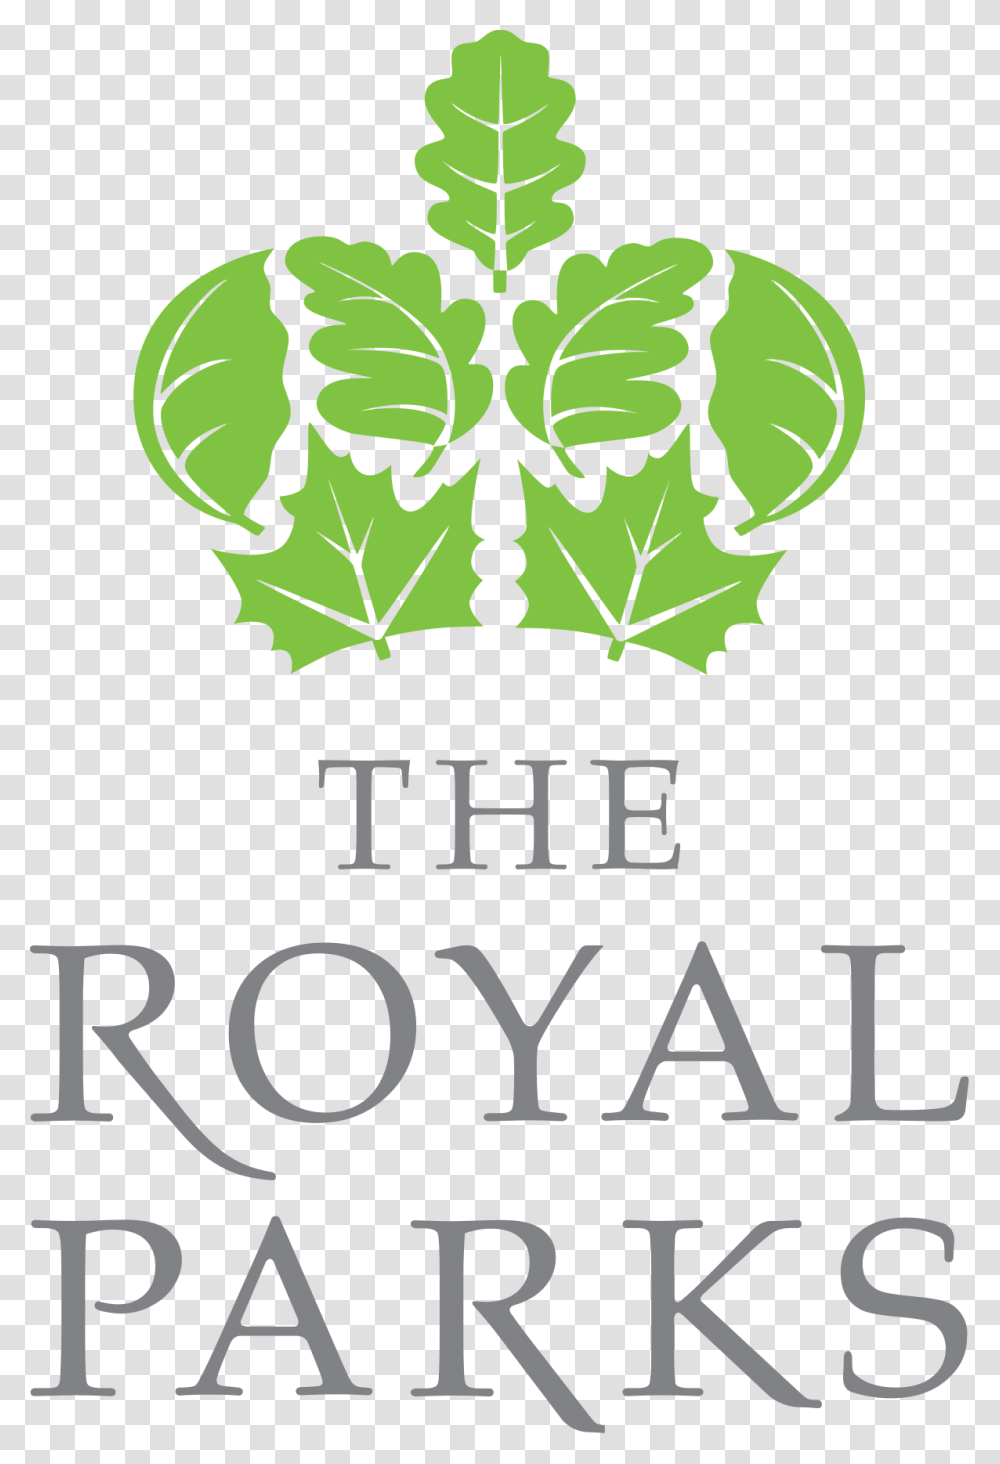 Royal Parks Logo, Potted Plant, Vase, Jar, Pottery Transparent Png